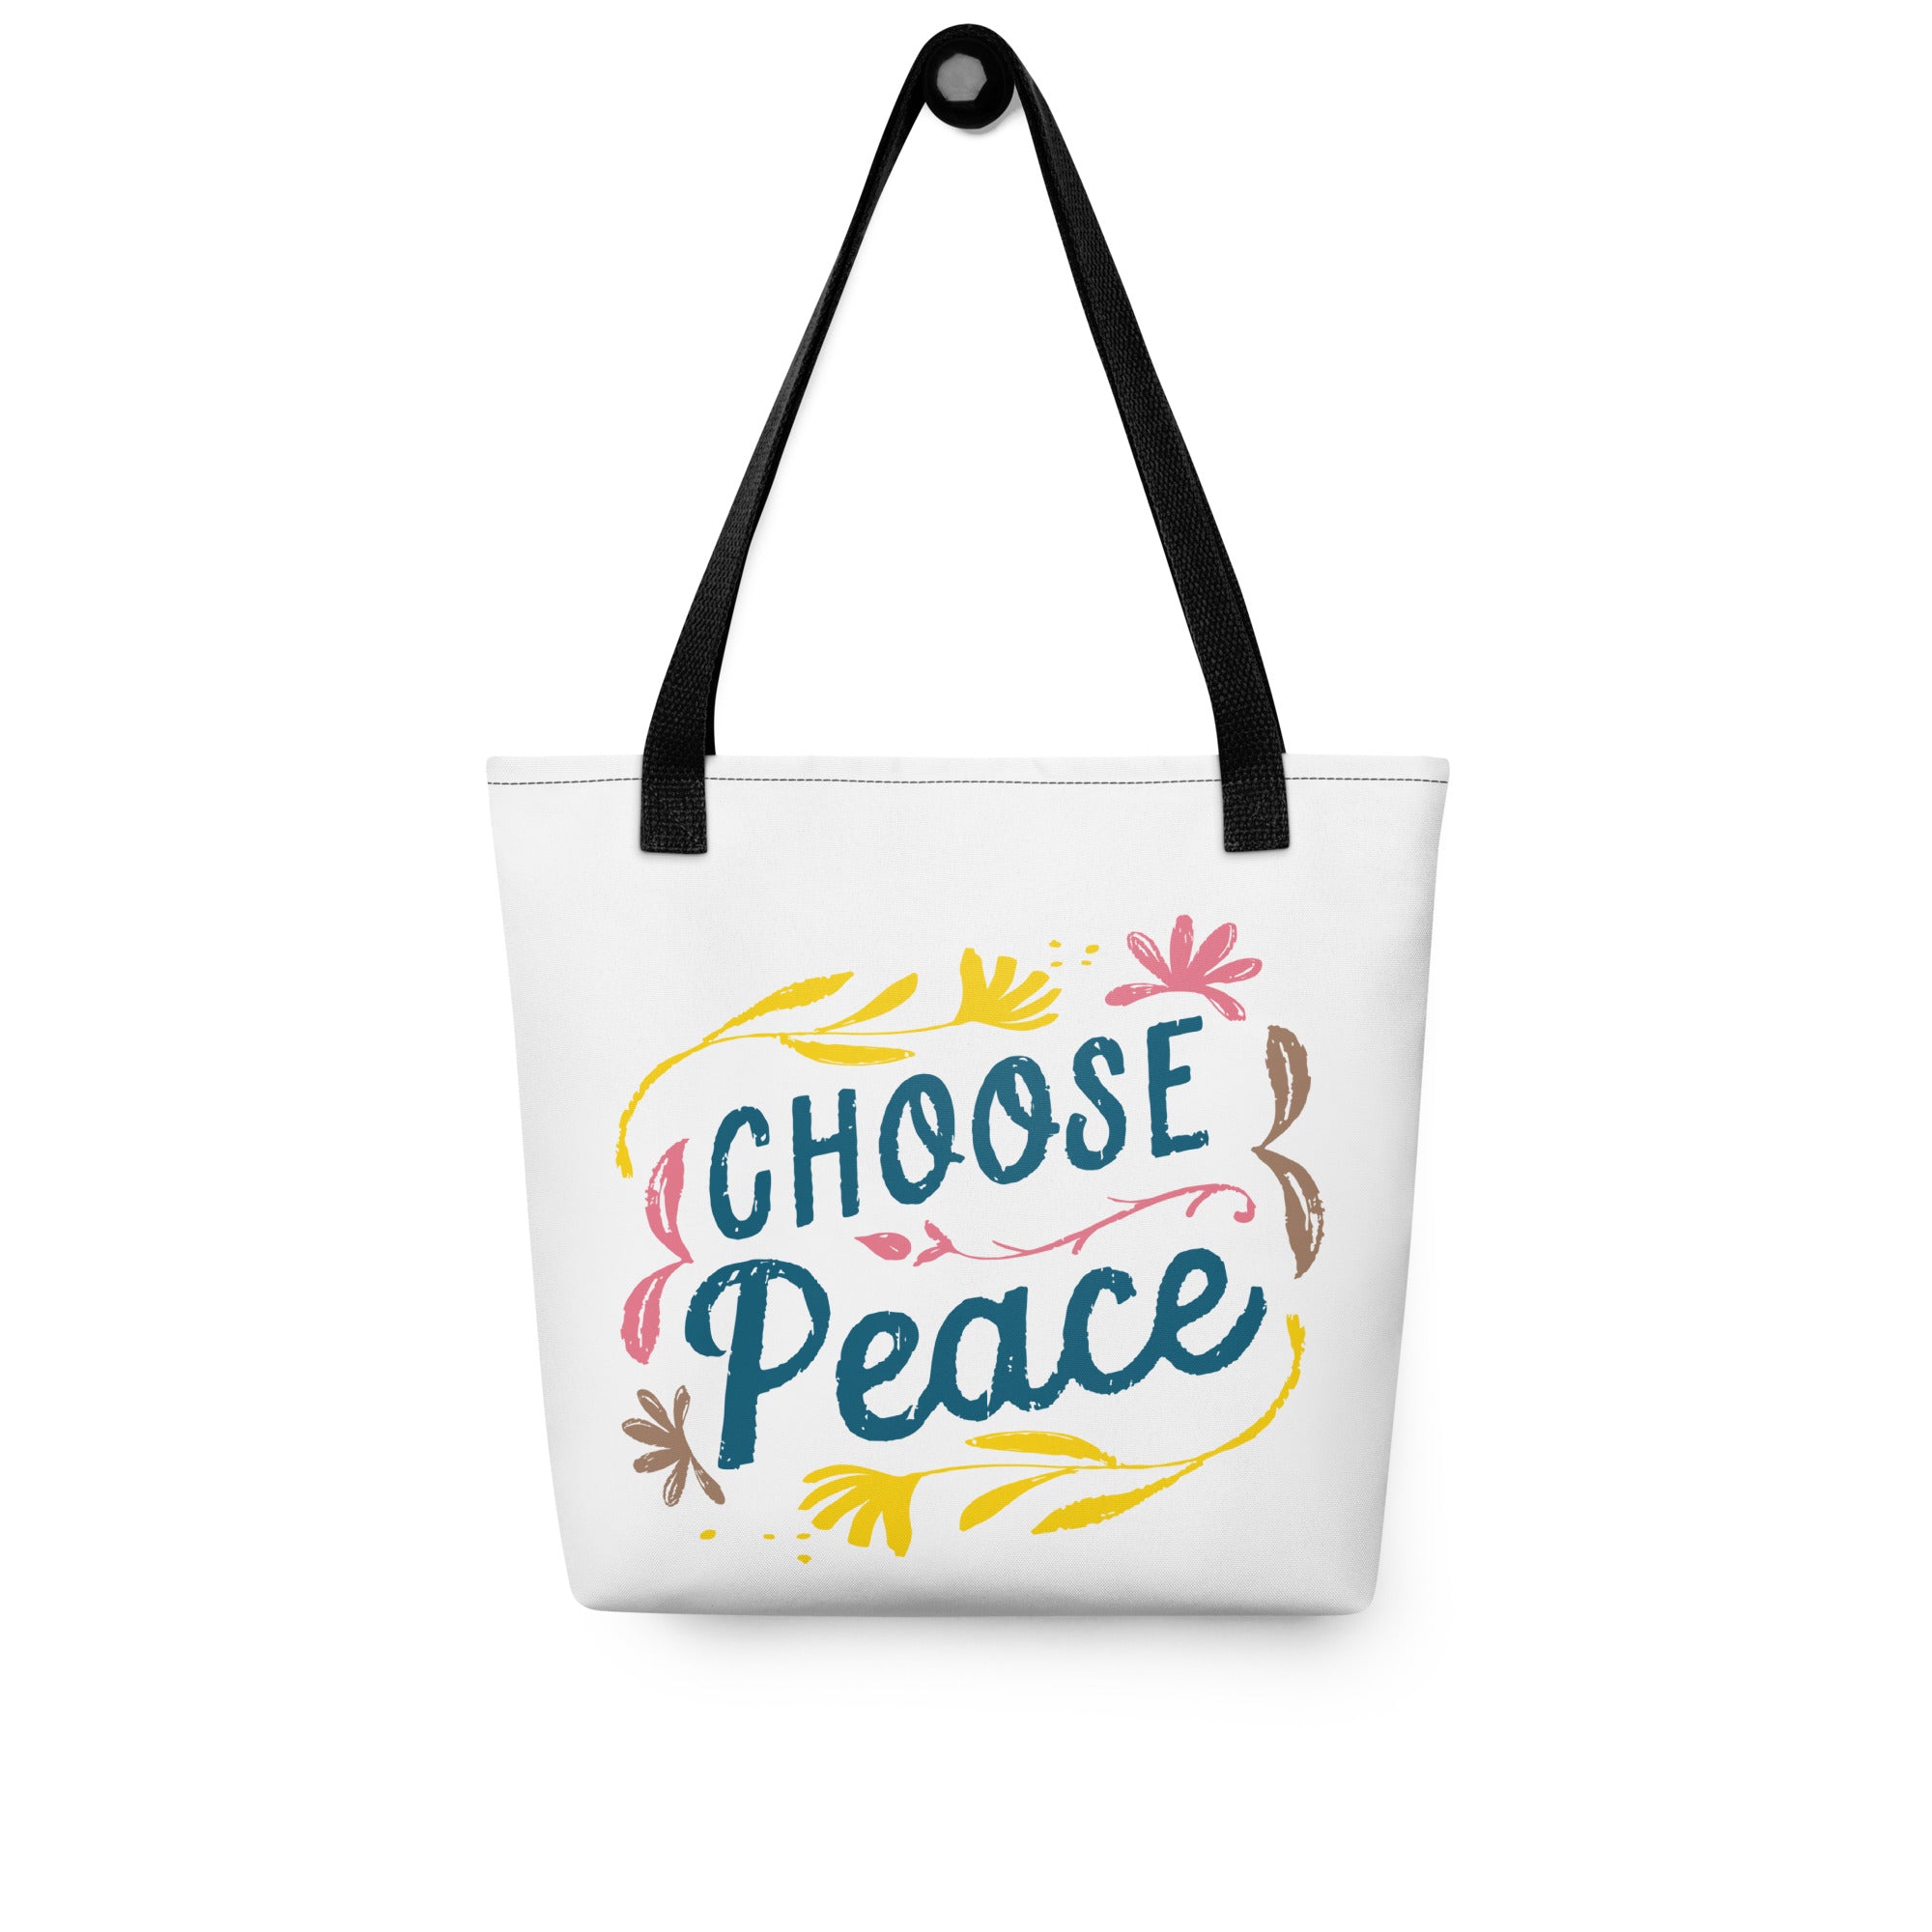 Choose Peace Tote bag